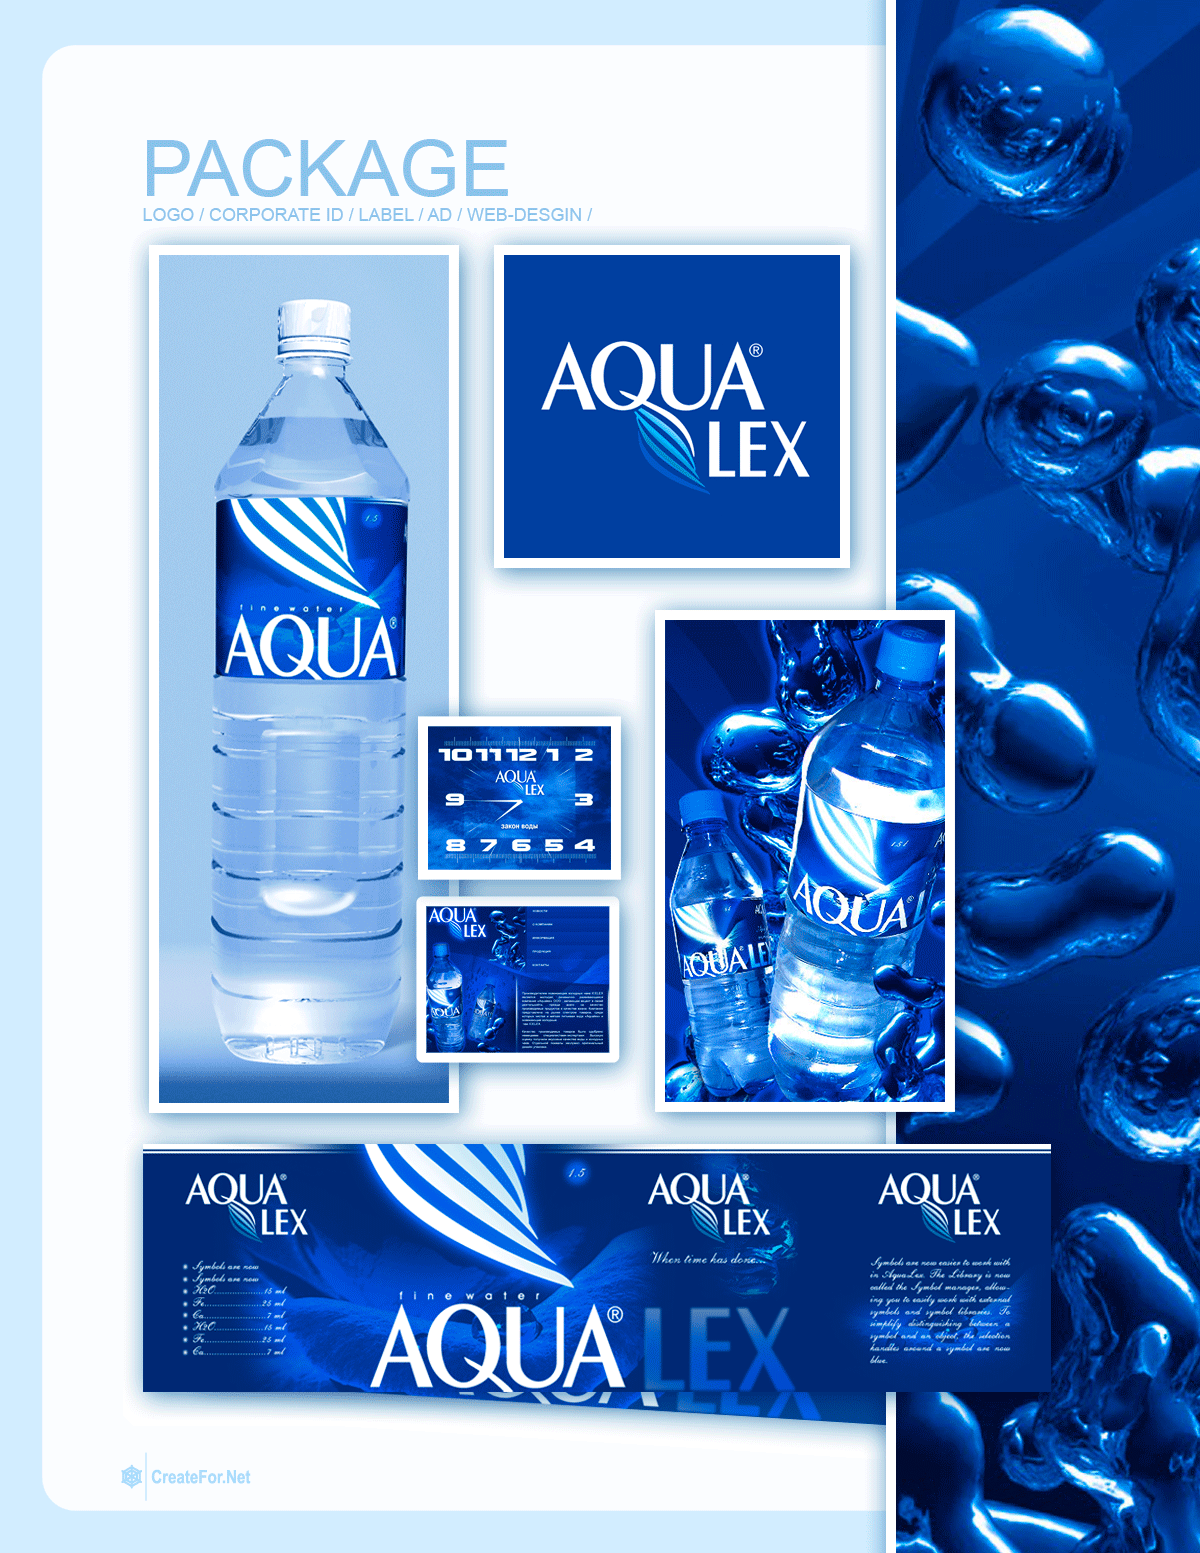 Дизайн этикетки для воды - Аквалекс